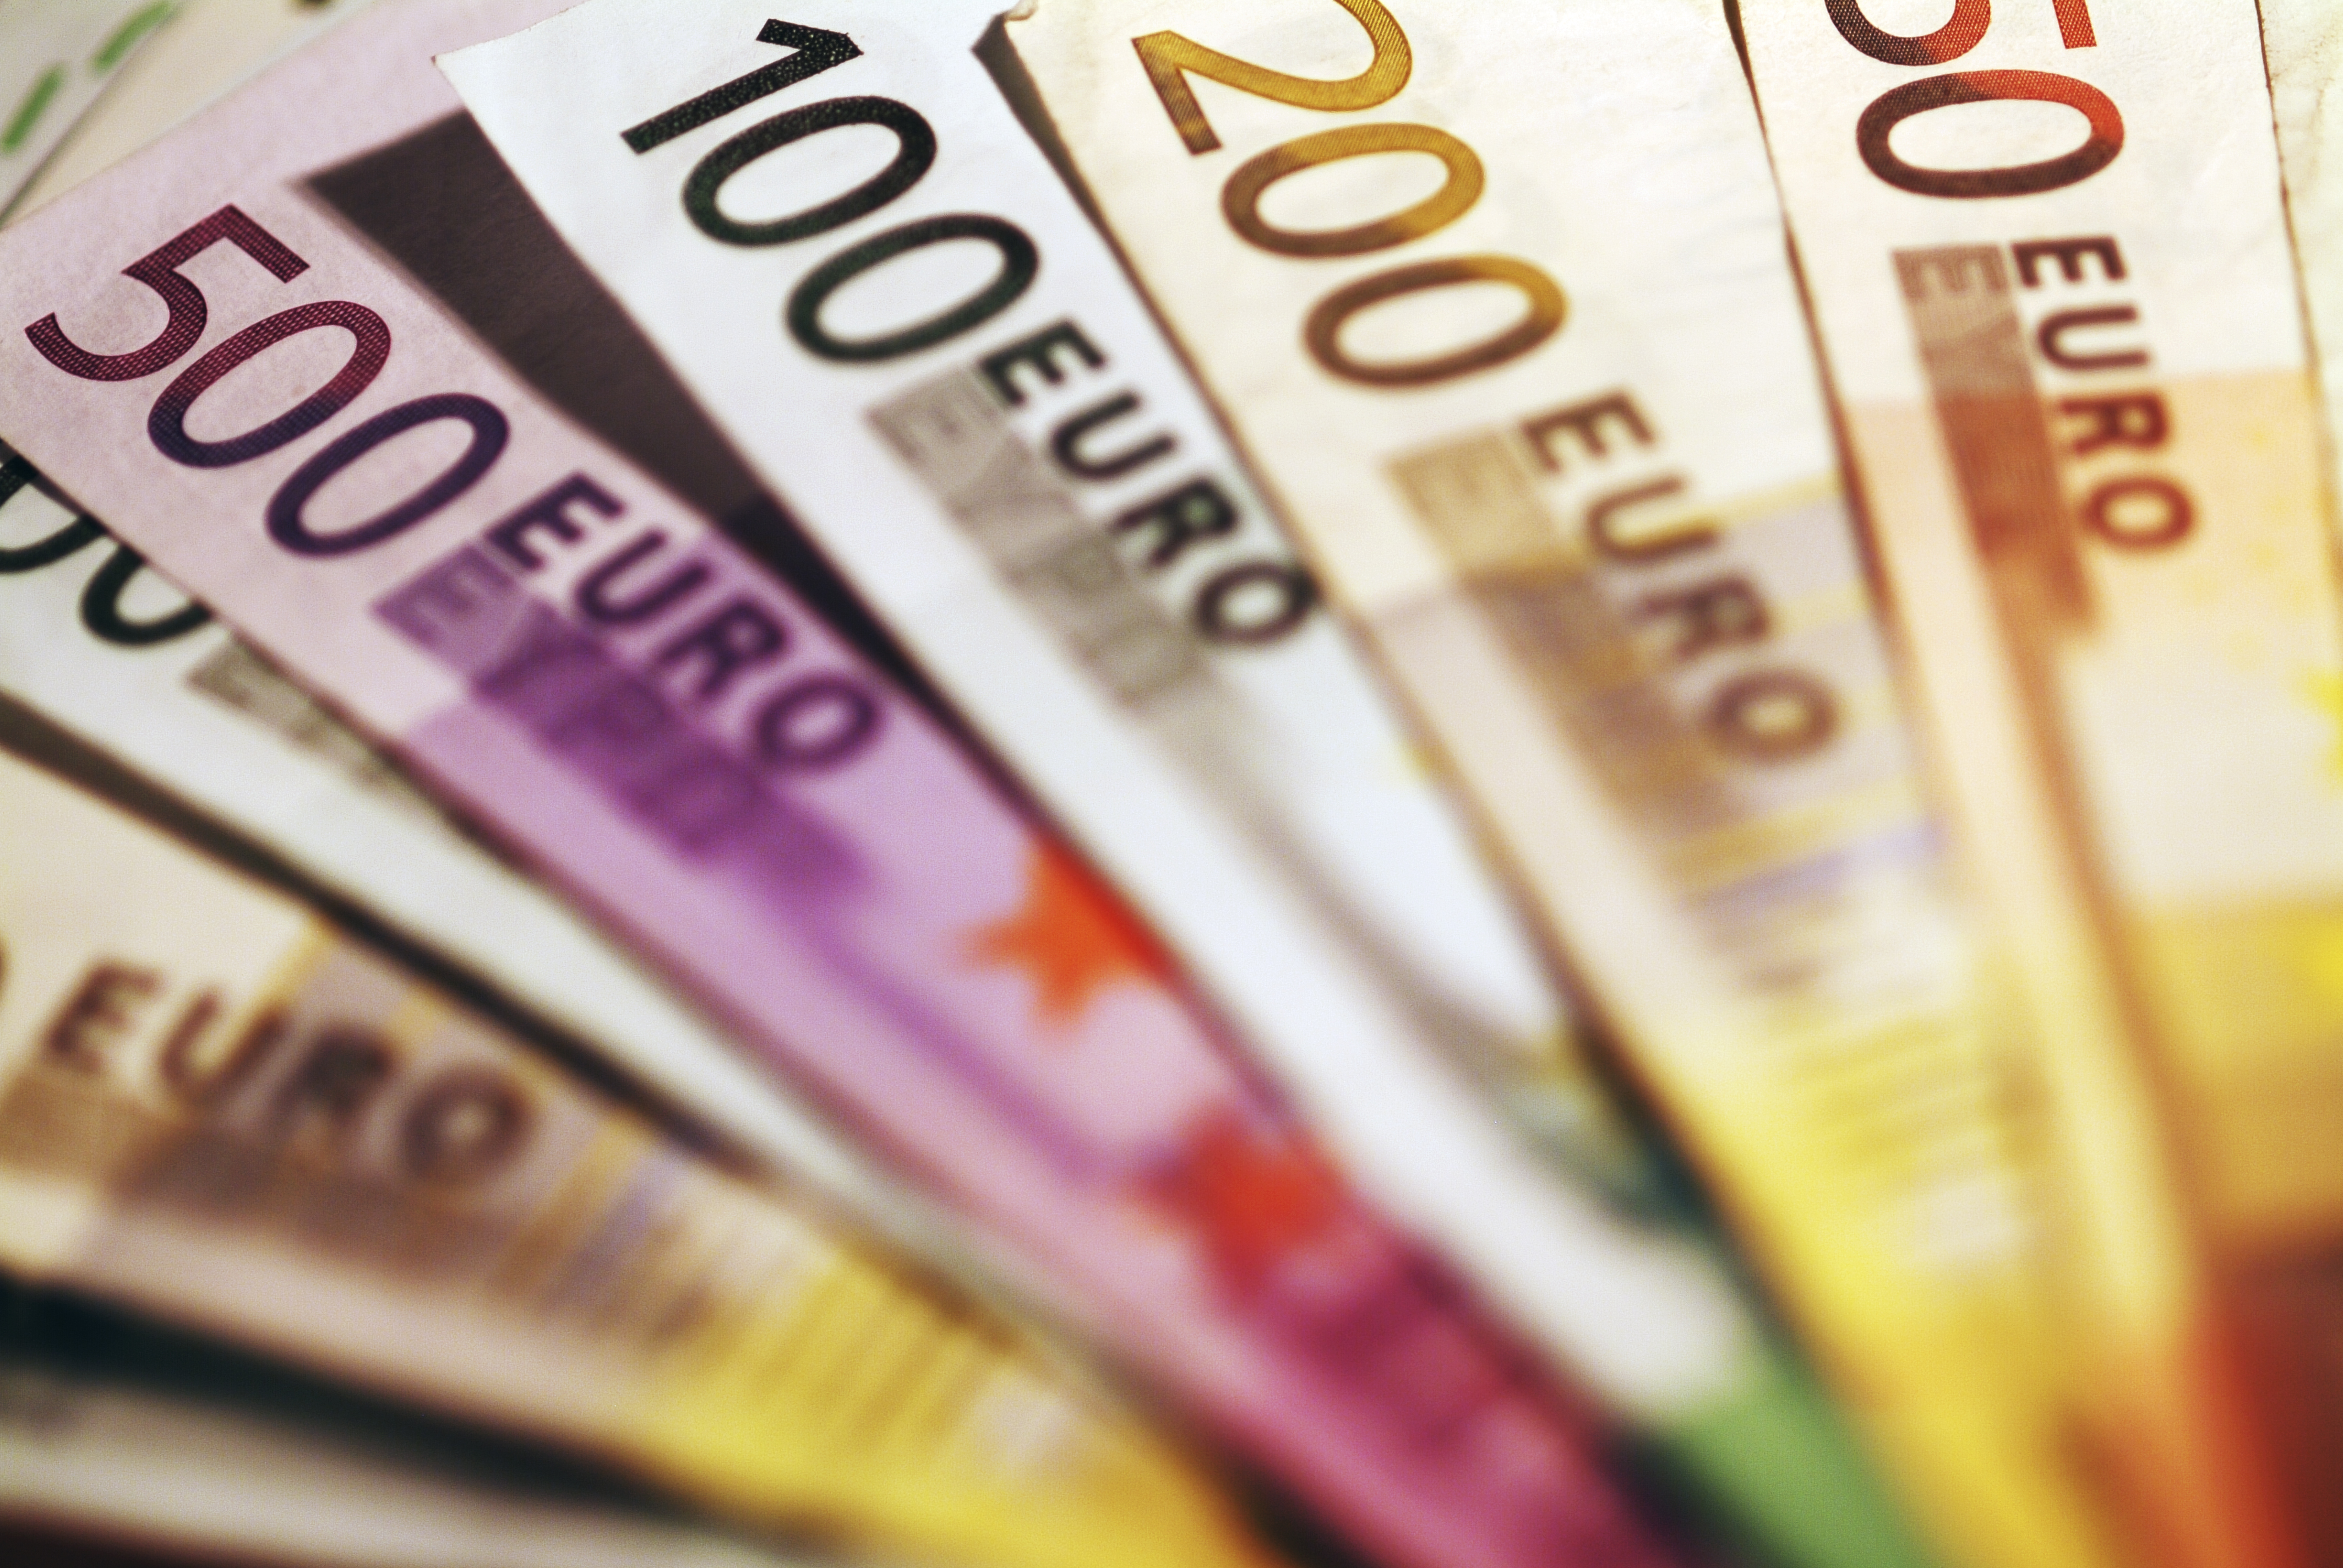 ΟΔΔΗΧ: Δημοπρασία εντόκων γραμματίων 1 δισ. ευρώ την Τρίτη